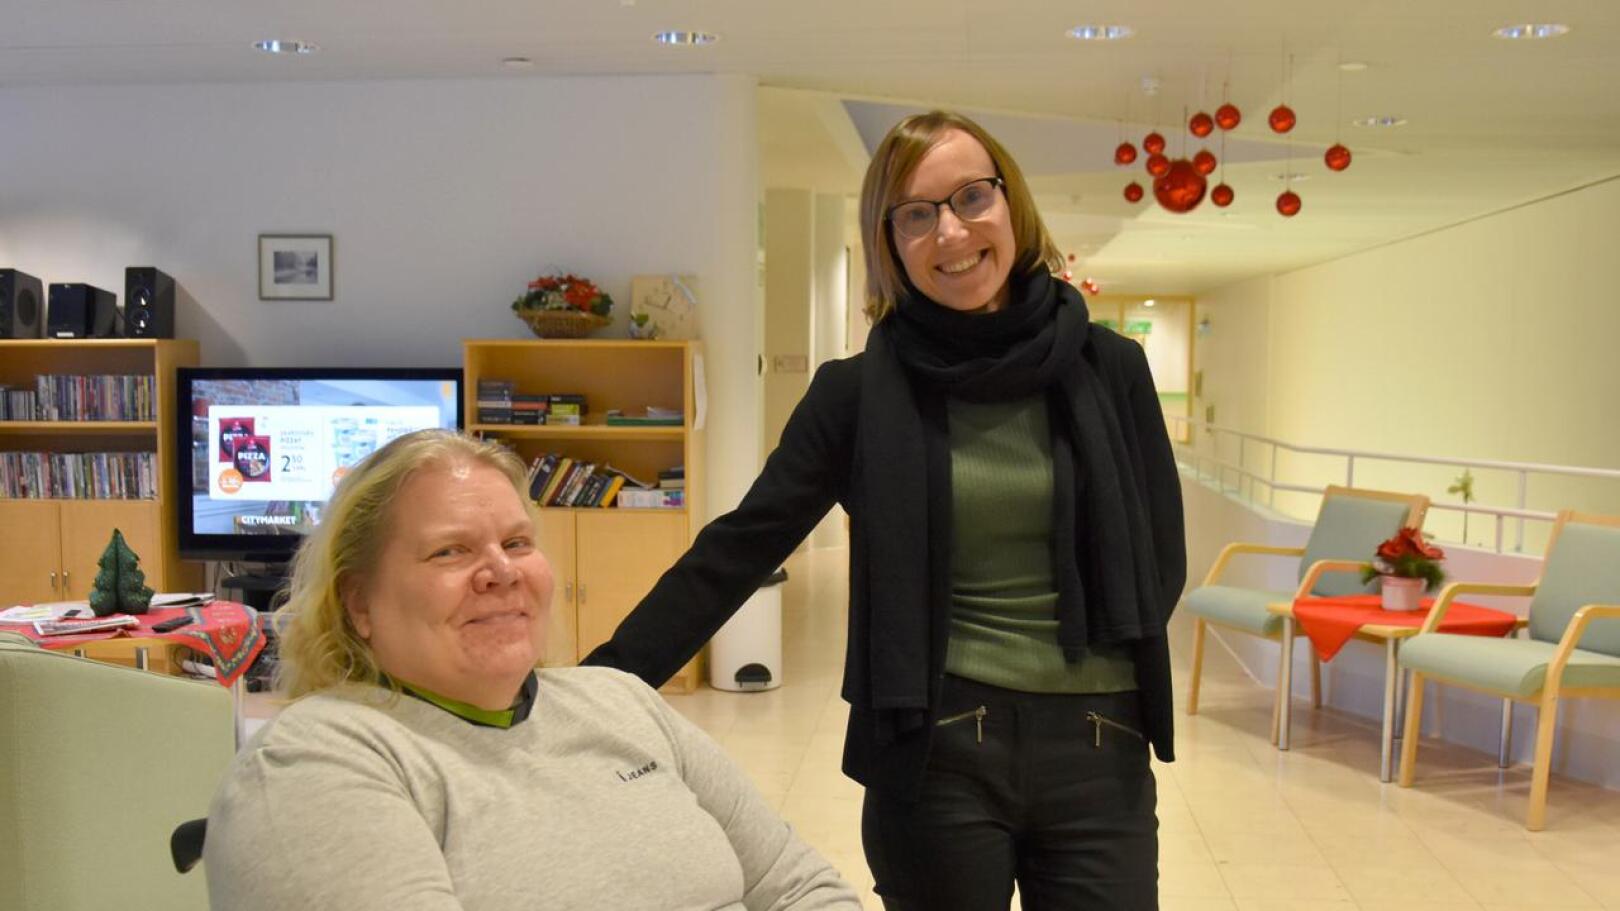 Tutustumista. Johanna Rautakoski (oikealla) on saanut lämpimän vastaanoton Kitinkannuksessa. Kuvassa Kitinkannuksen asiakas Tuija Orrenmaa vaihtamassa mielipiteitä Rautakosken kanssa.